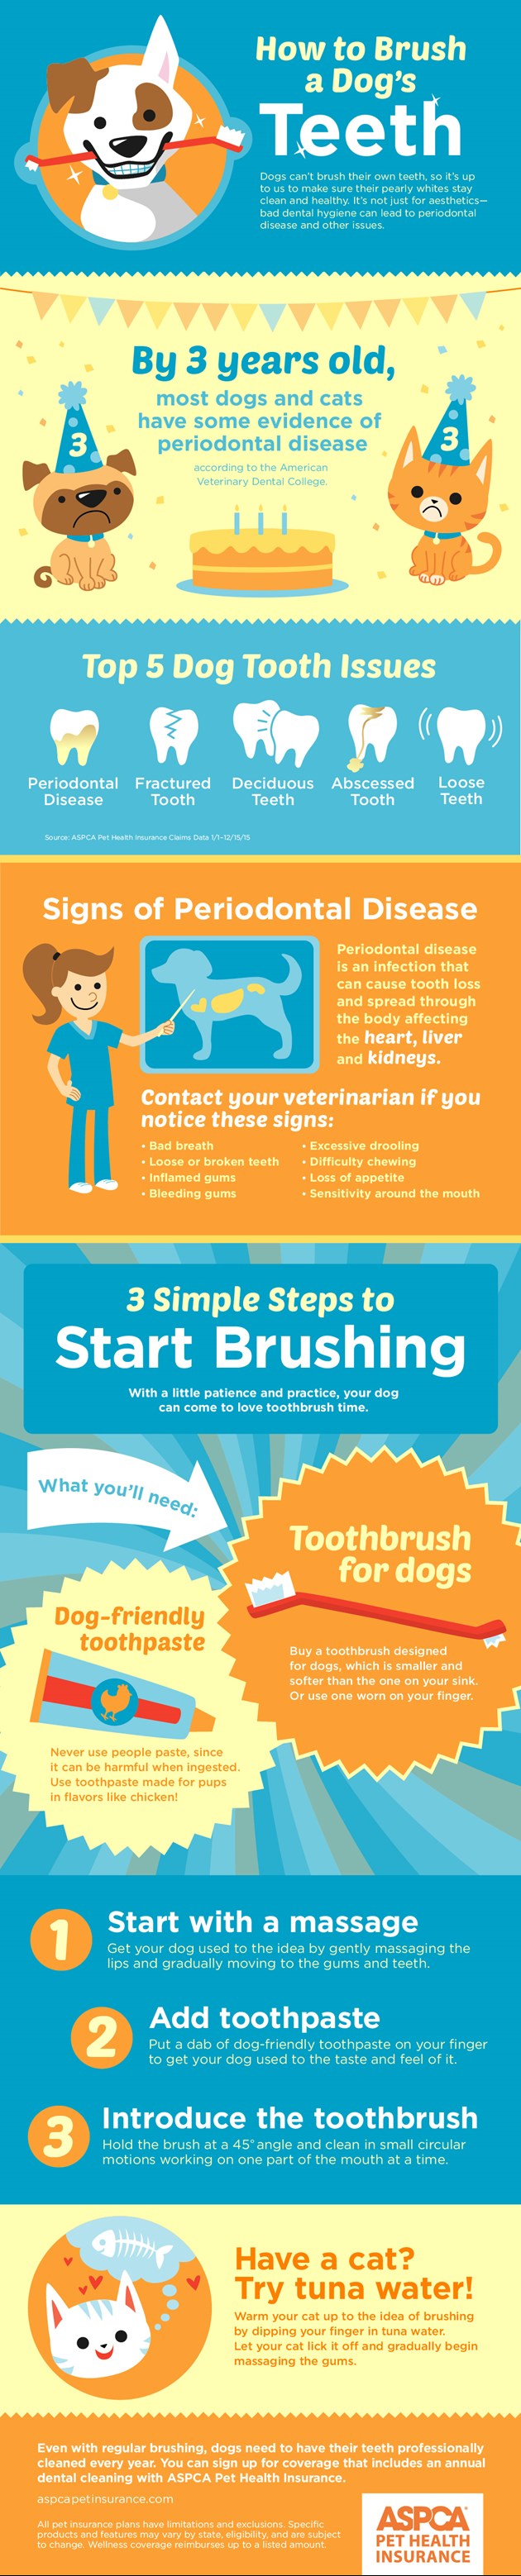 Blog : How to Brush